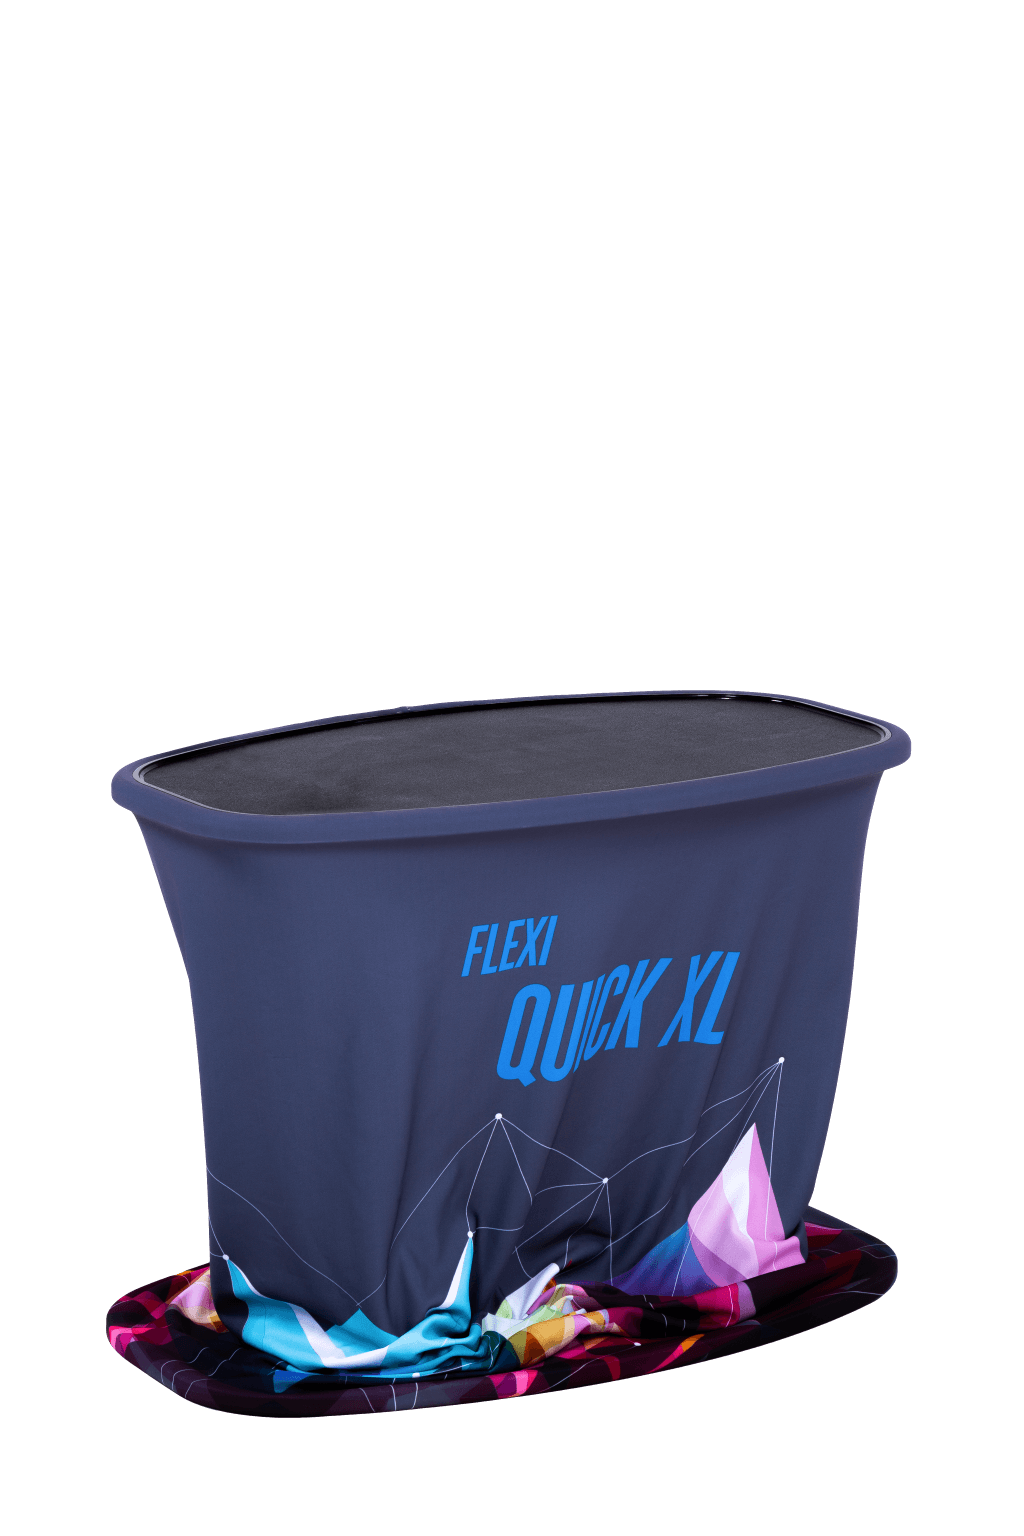 FLEXI QUICK XL